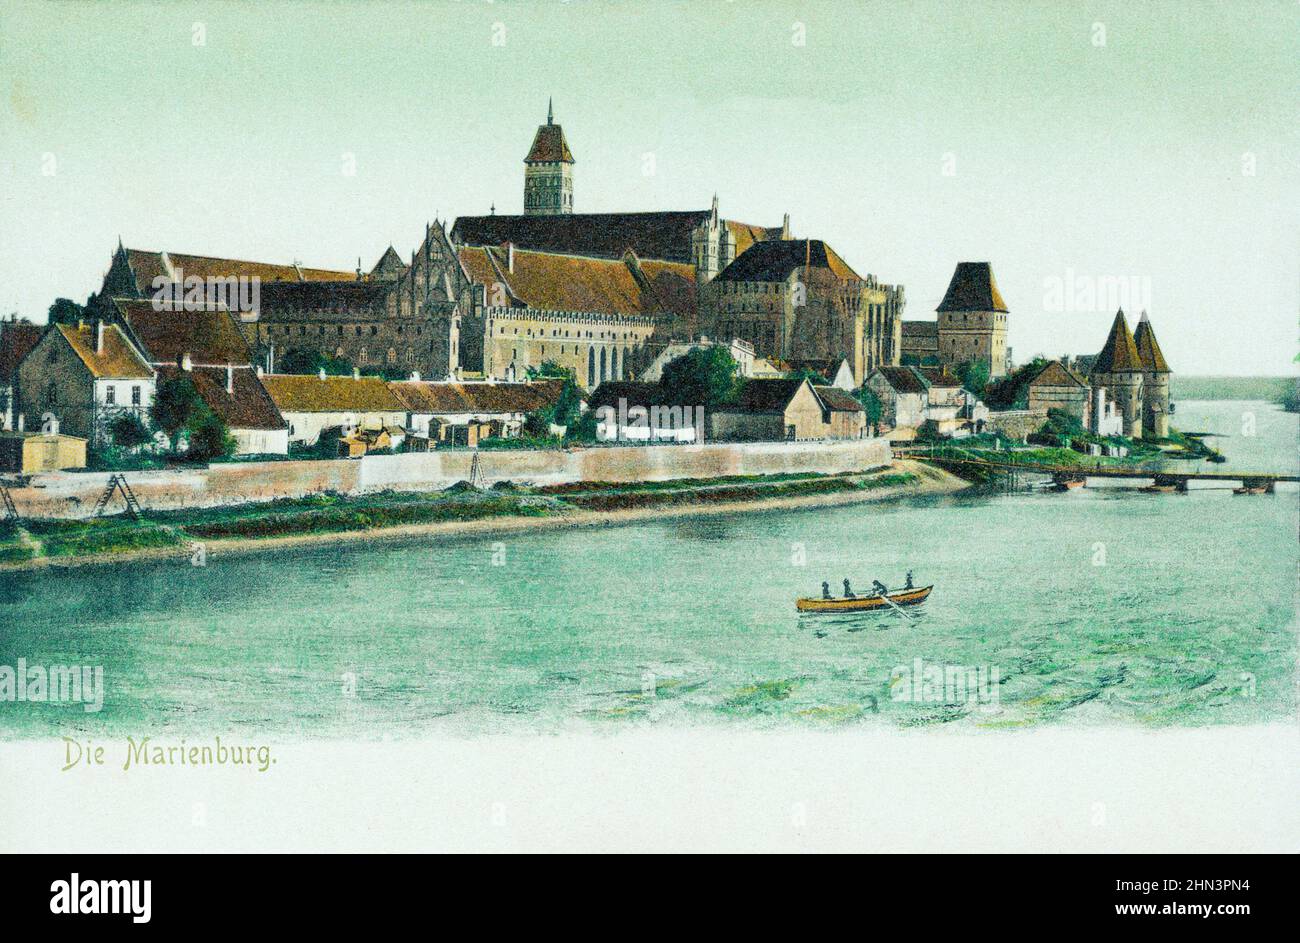 Carte postale allemande d'époque : château de Marienburg (château de Malbork). Allemagne. 1900-1905 Banque D'Images